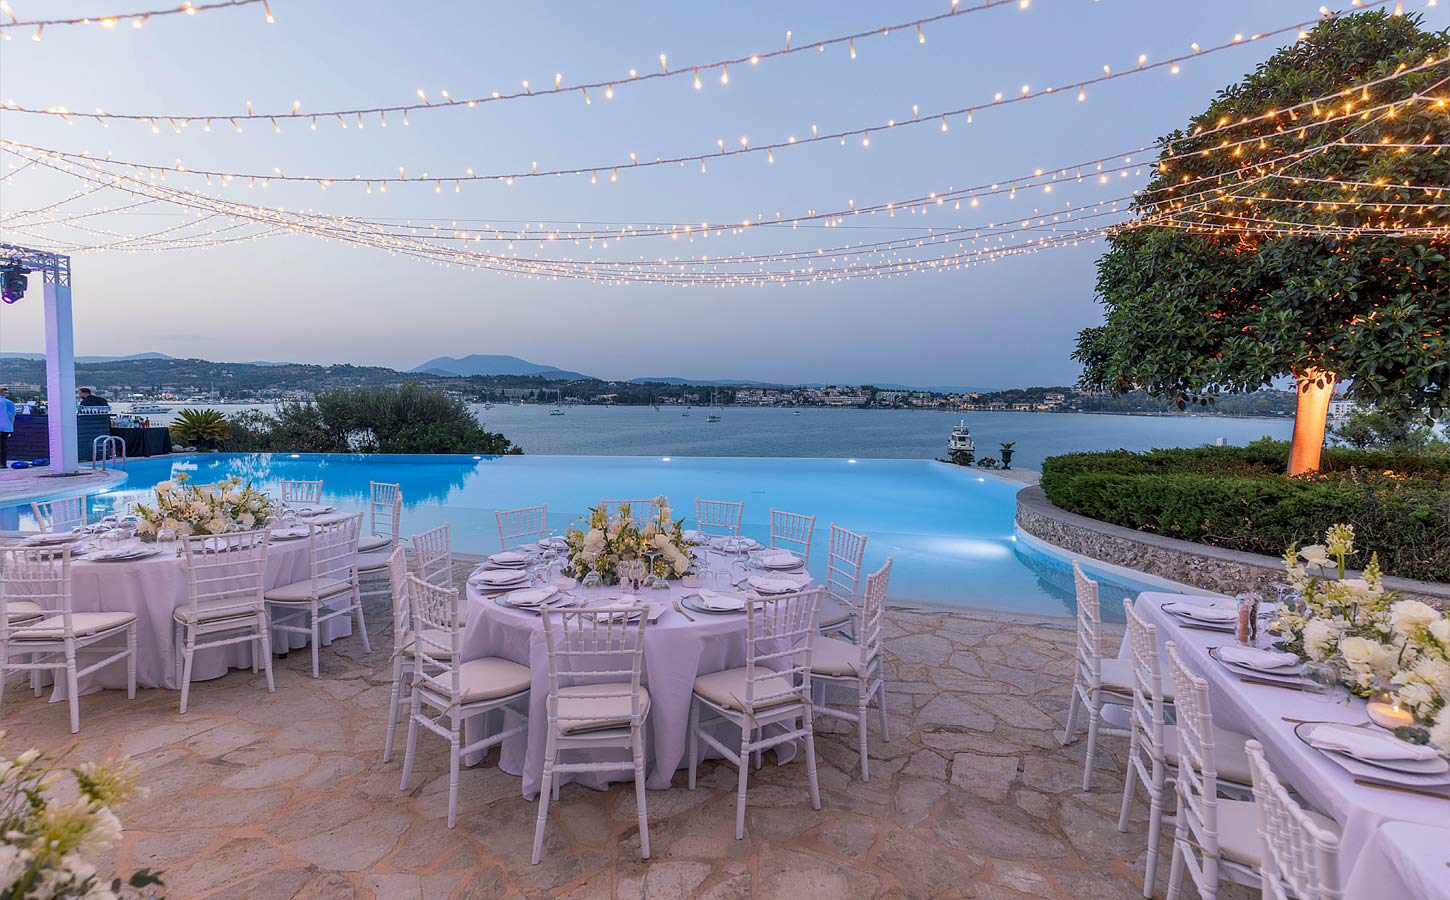 Amazing wedding setup in a private villa in Porto Heli Greece by Rogdaki Events